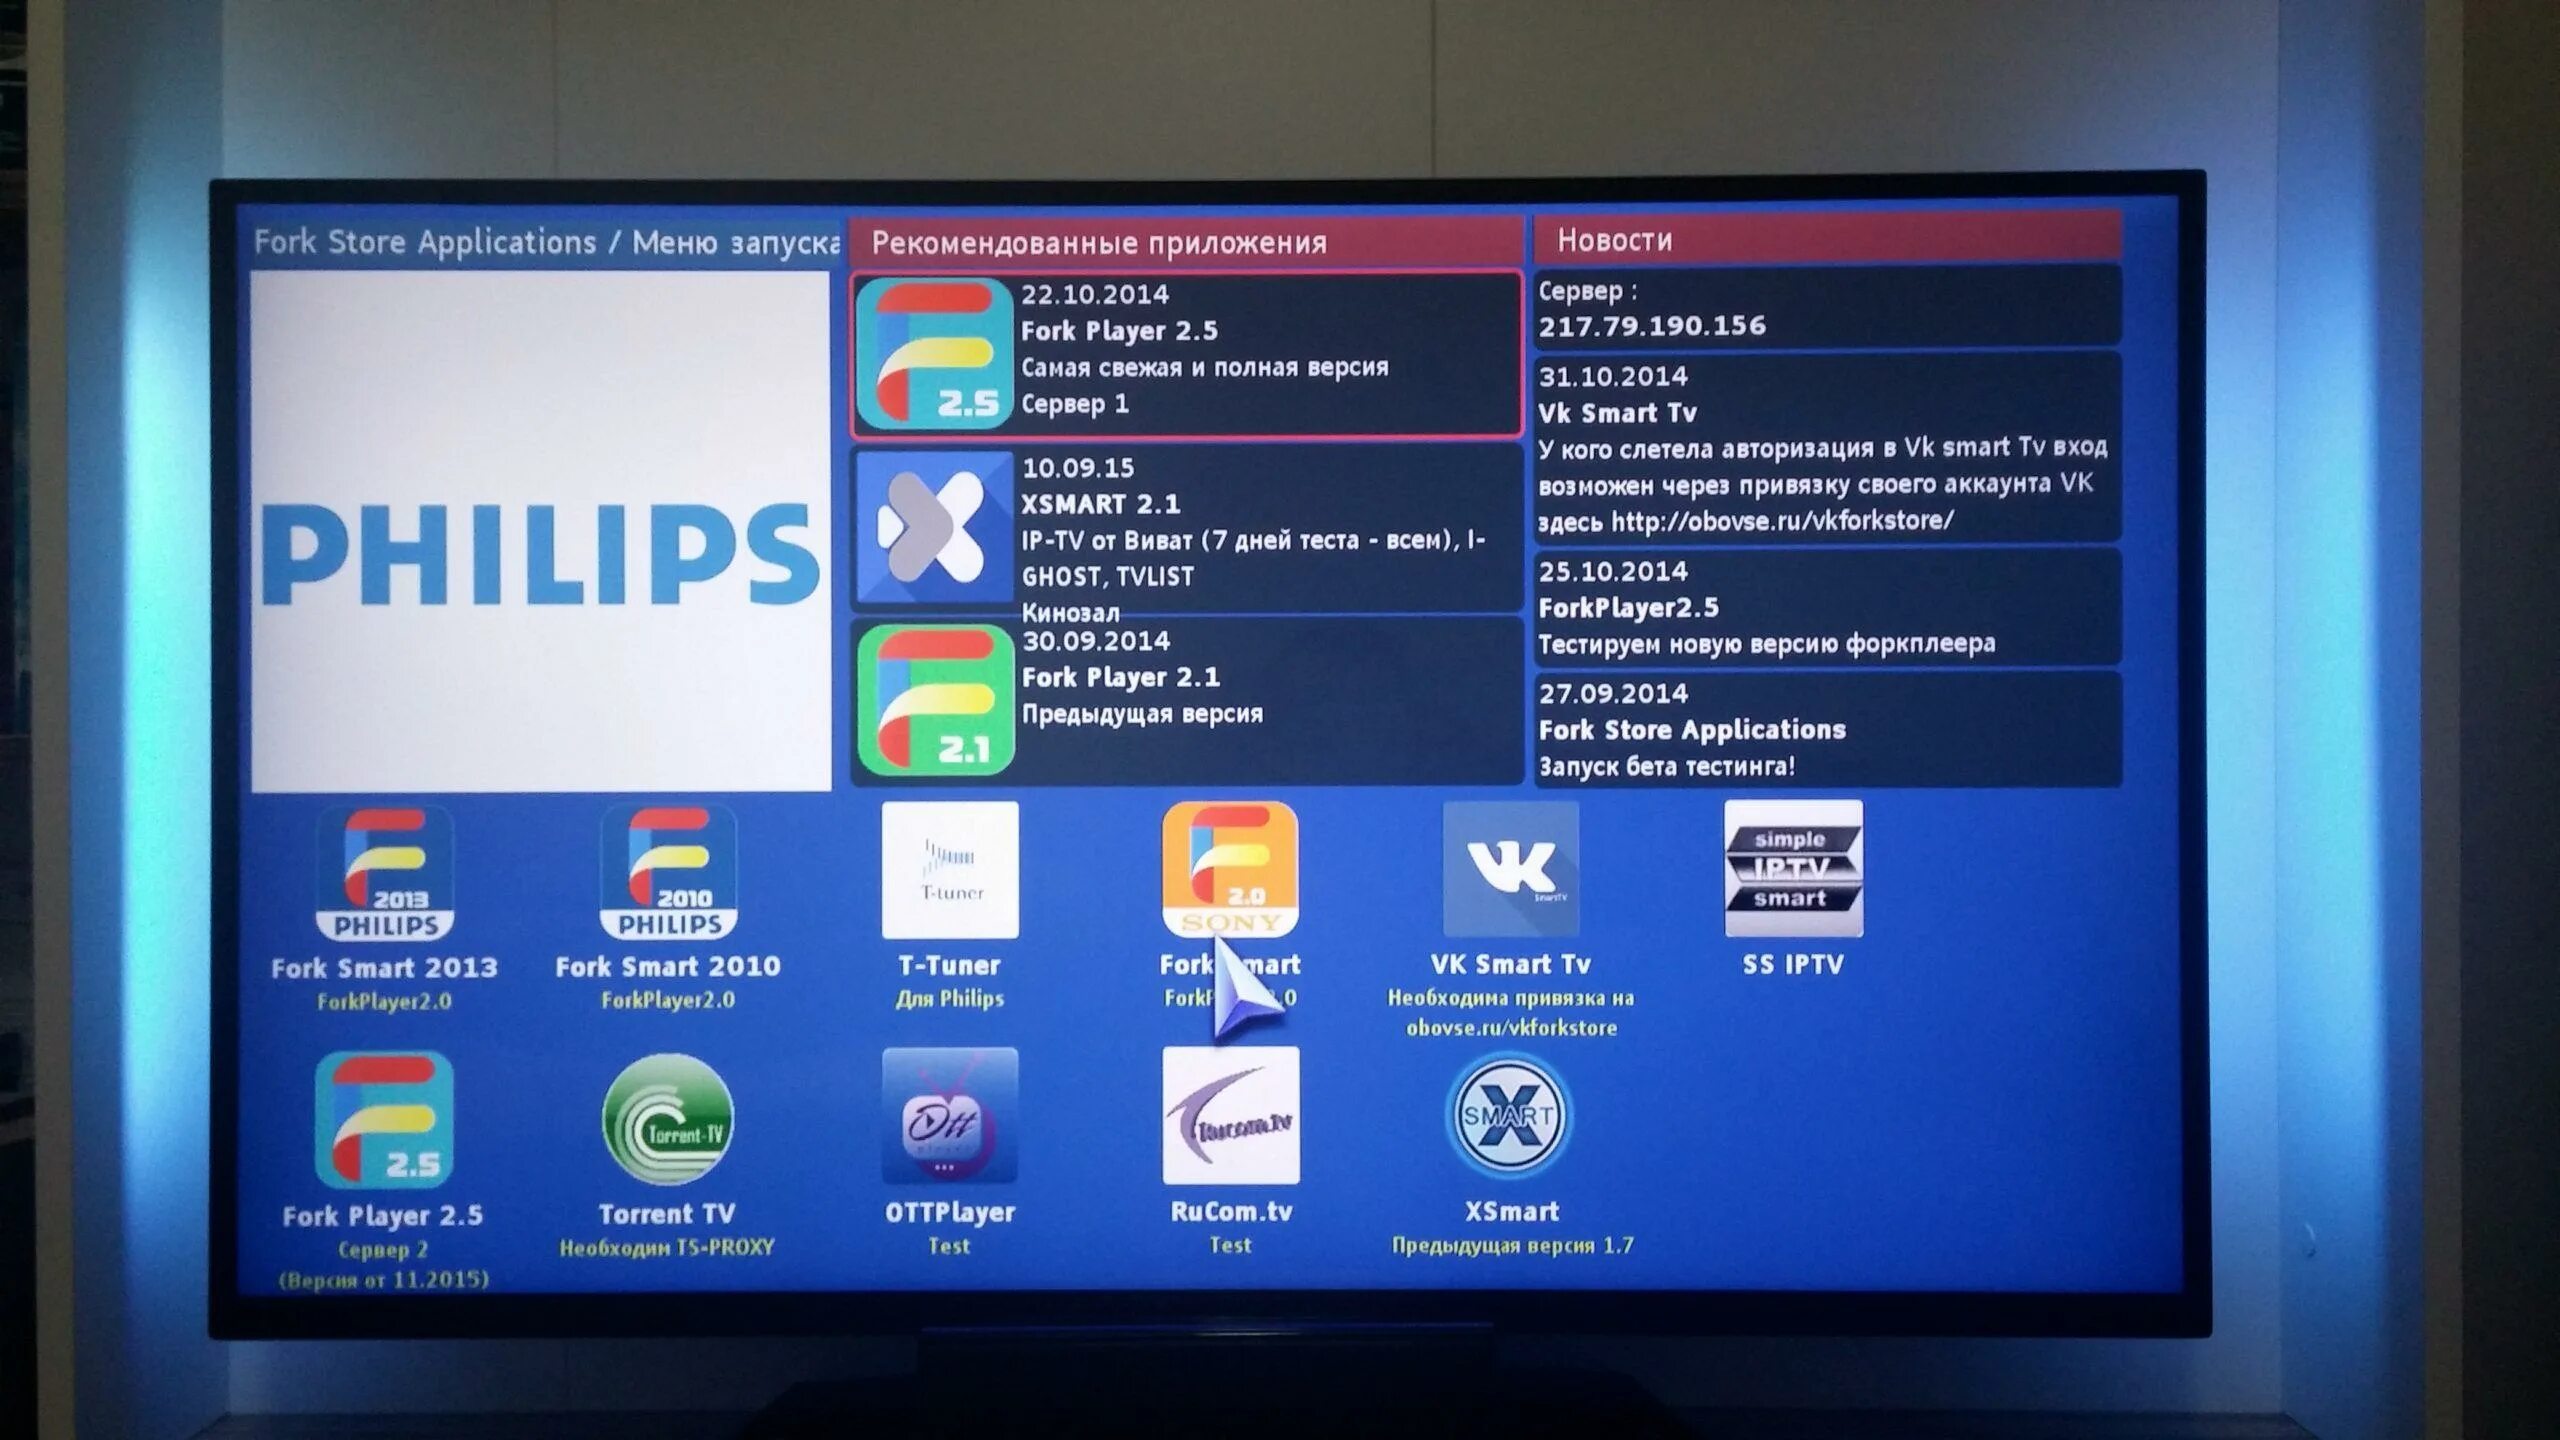 Philips телевизор смарт ТВ 2013. Fork Player для смарт ТВ. IPTV Player для смарт ТВ. IPTVPORTAL на телевизор Филипс.